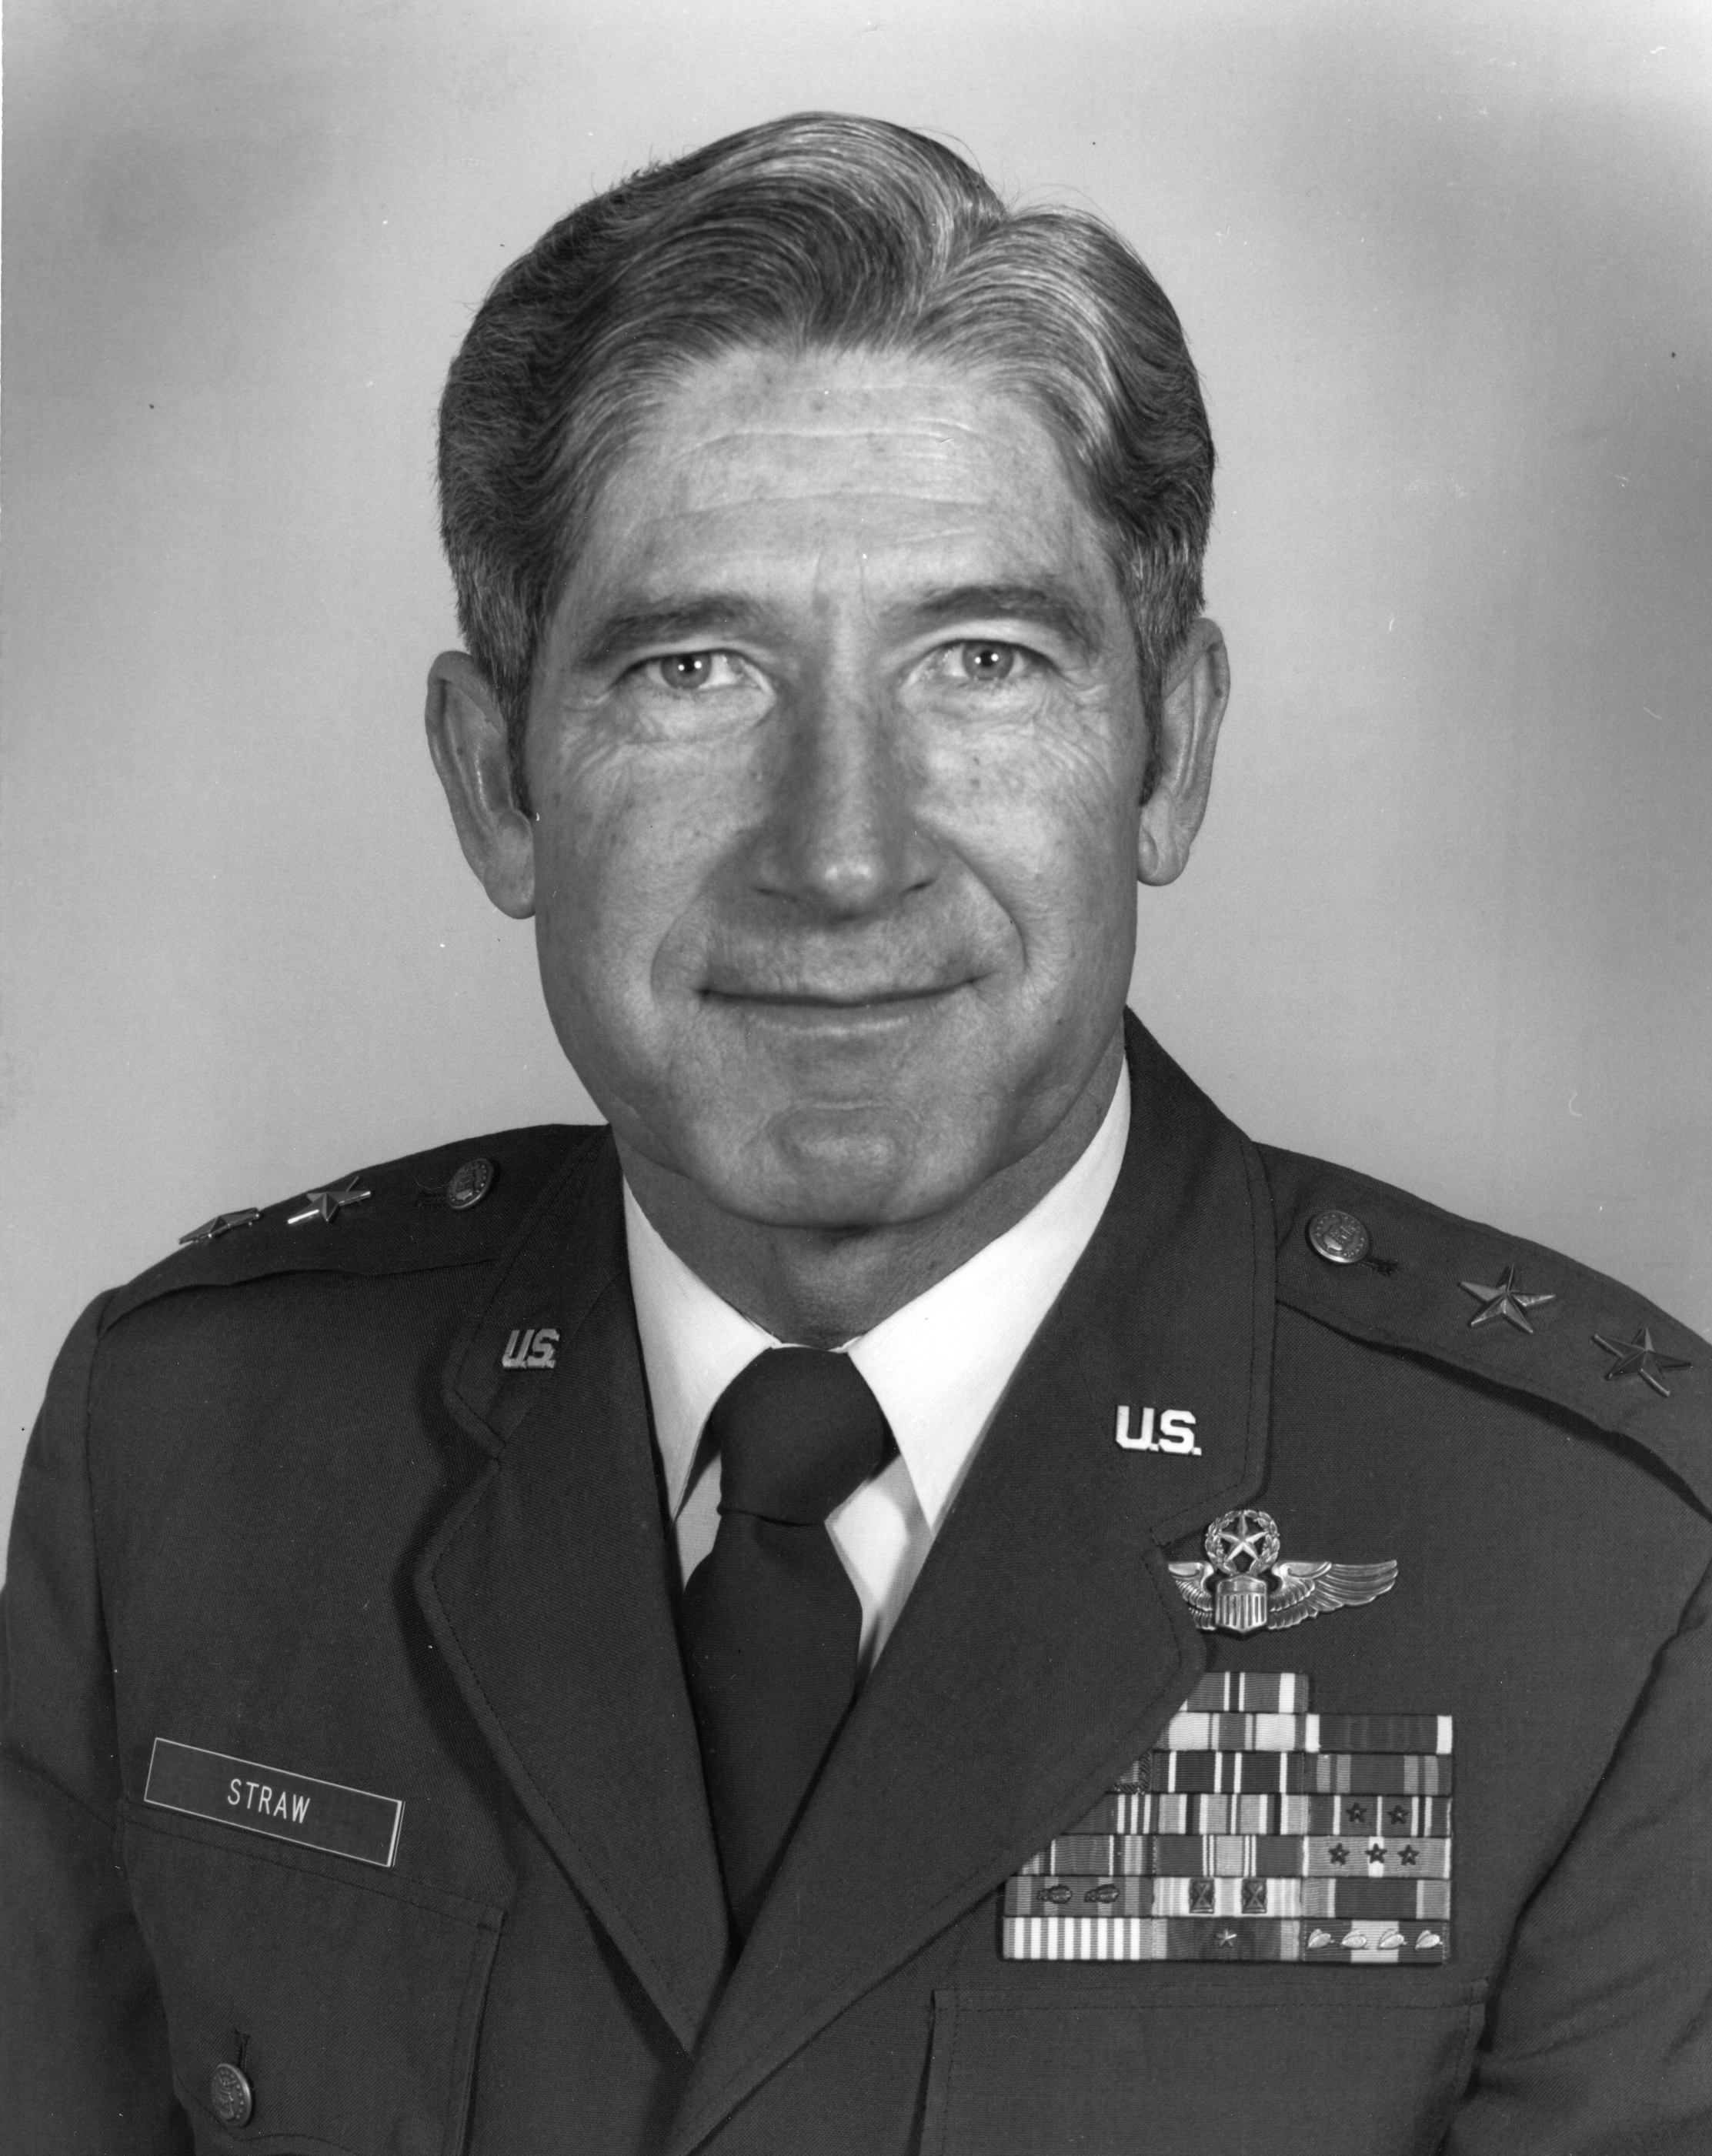 Major General Paul D. Straw